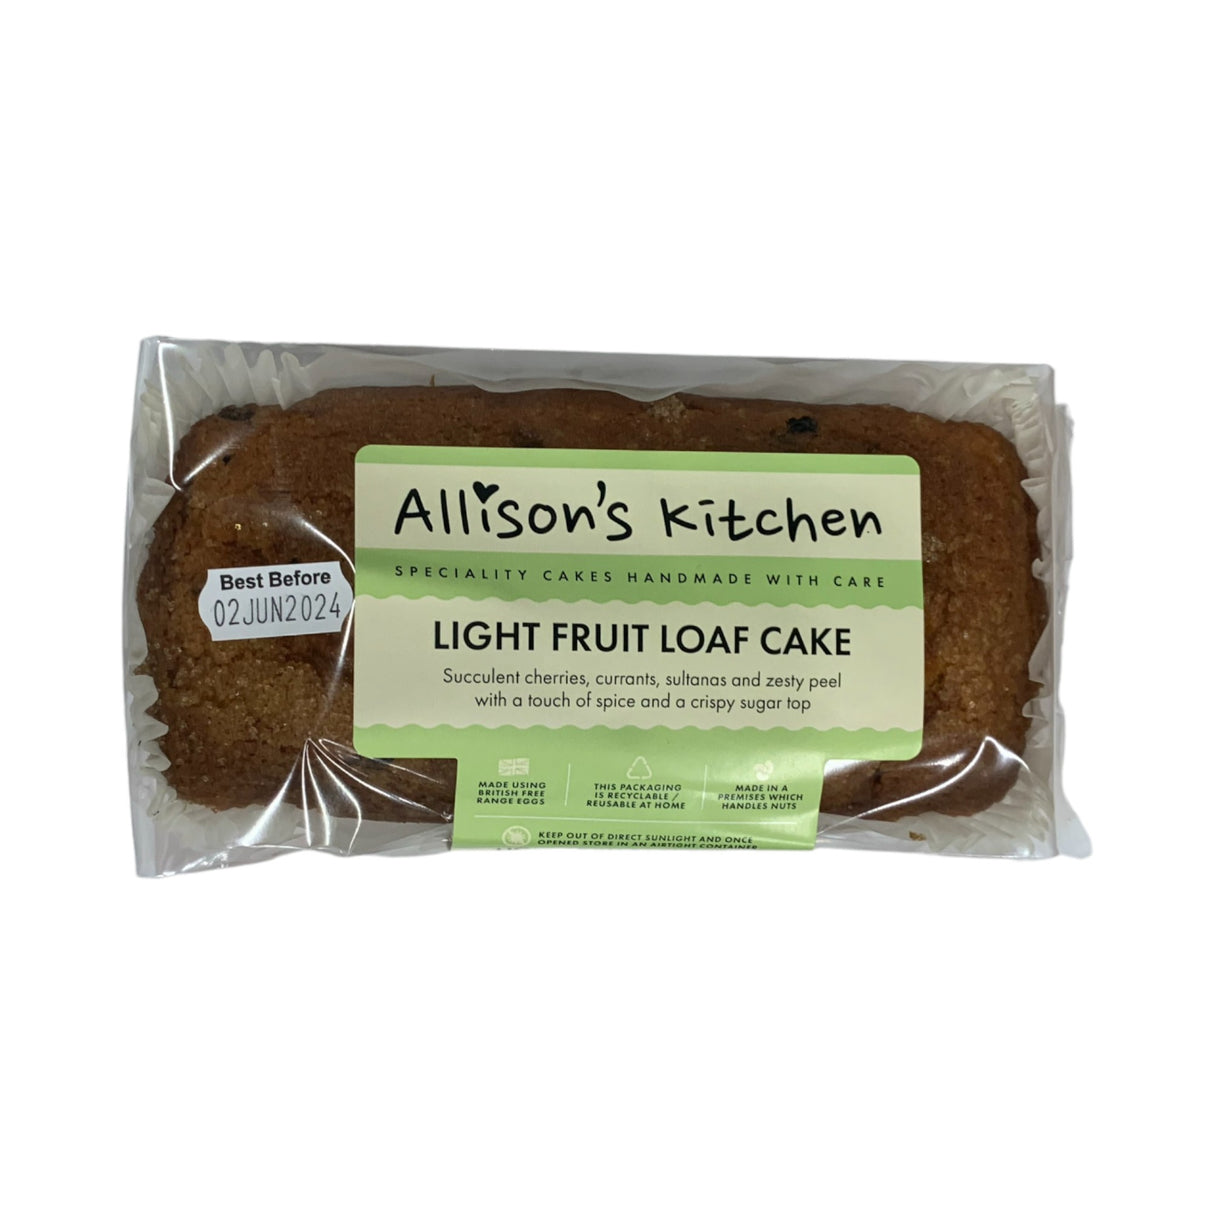 Allison's Kitchen Light Fruit Loaf Cake